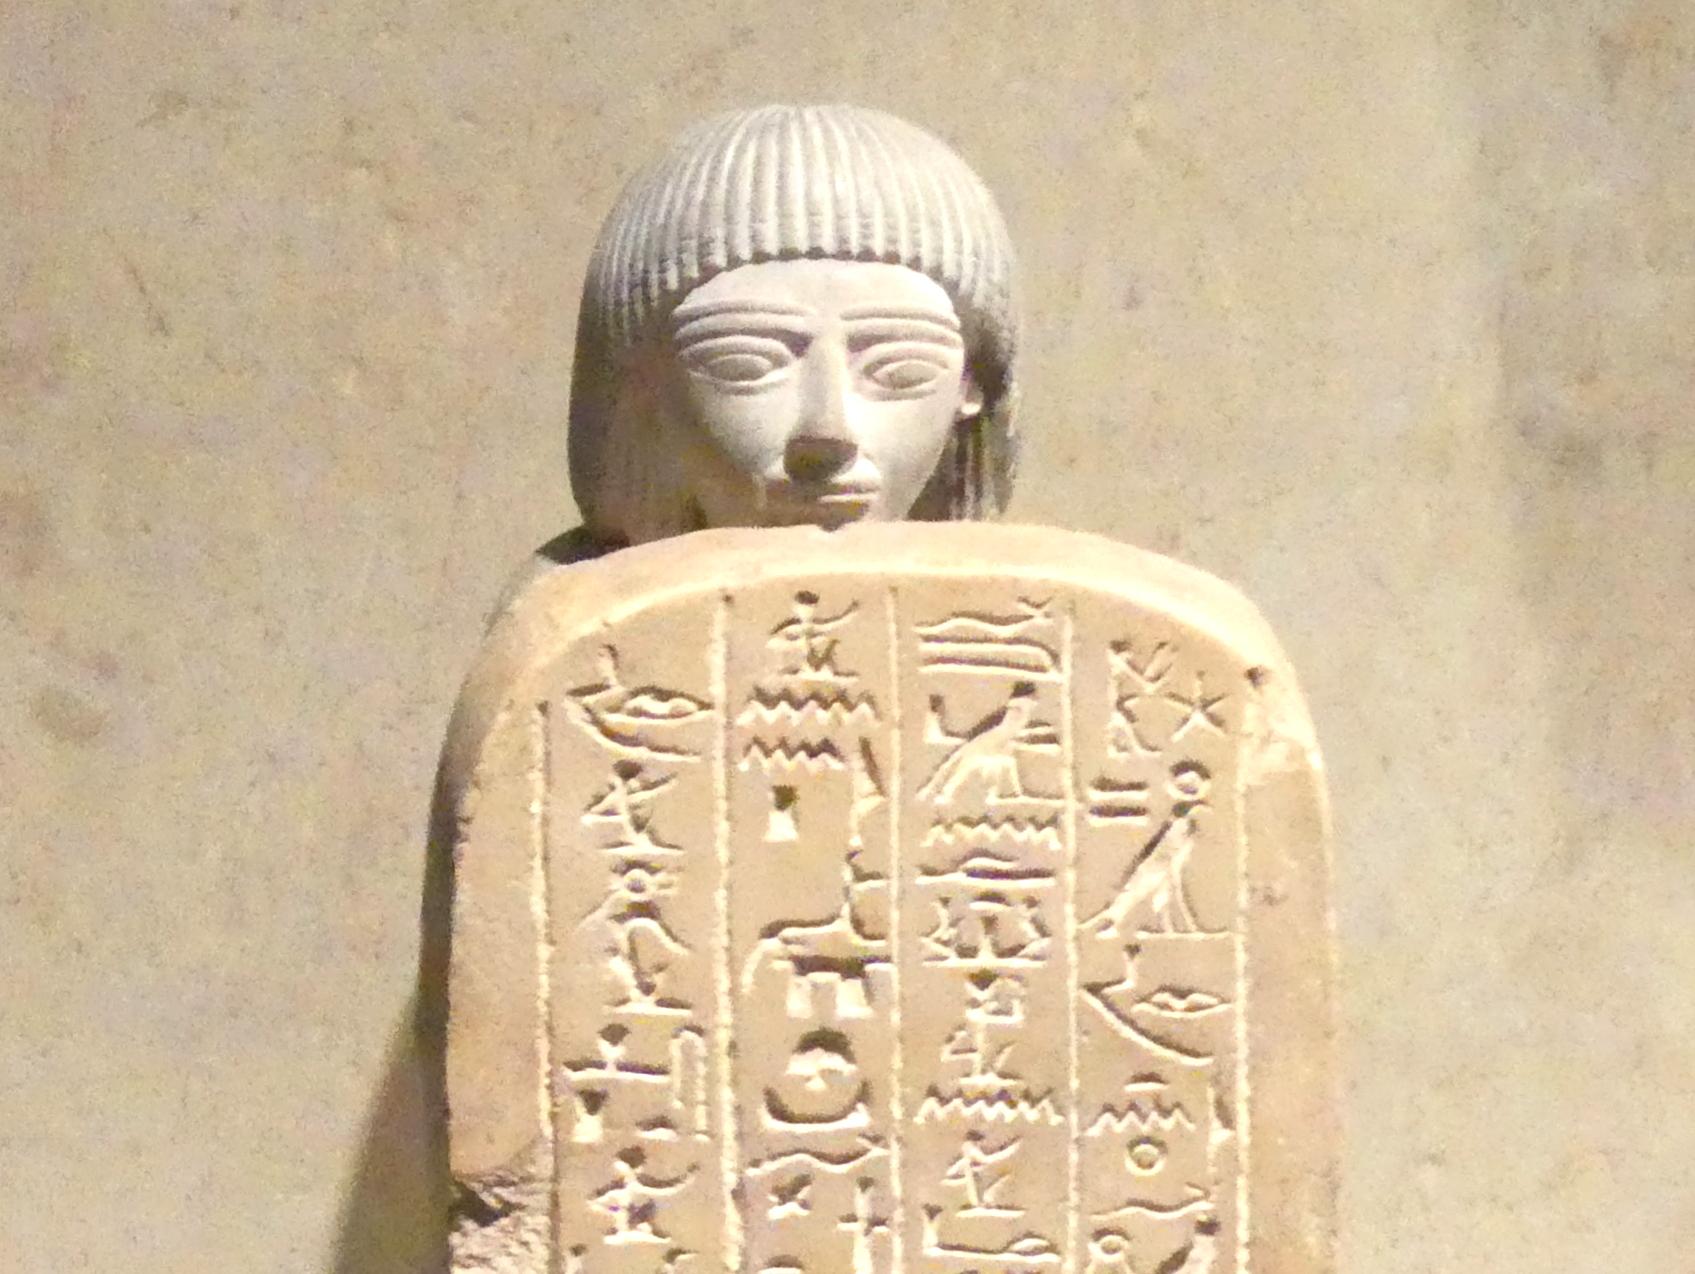 Stelophor (Stelenträger) des Nehi, 18. Dynastie, Undatiert, 1350 v. Chr., Bild 1/3